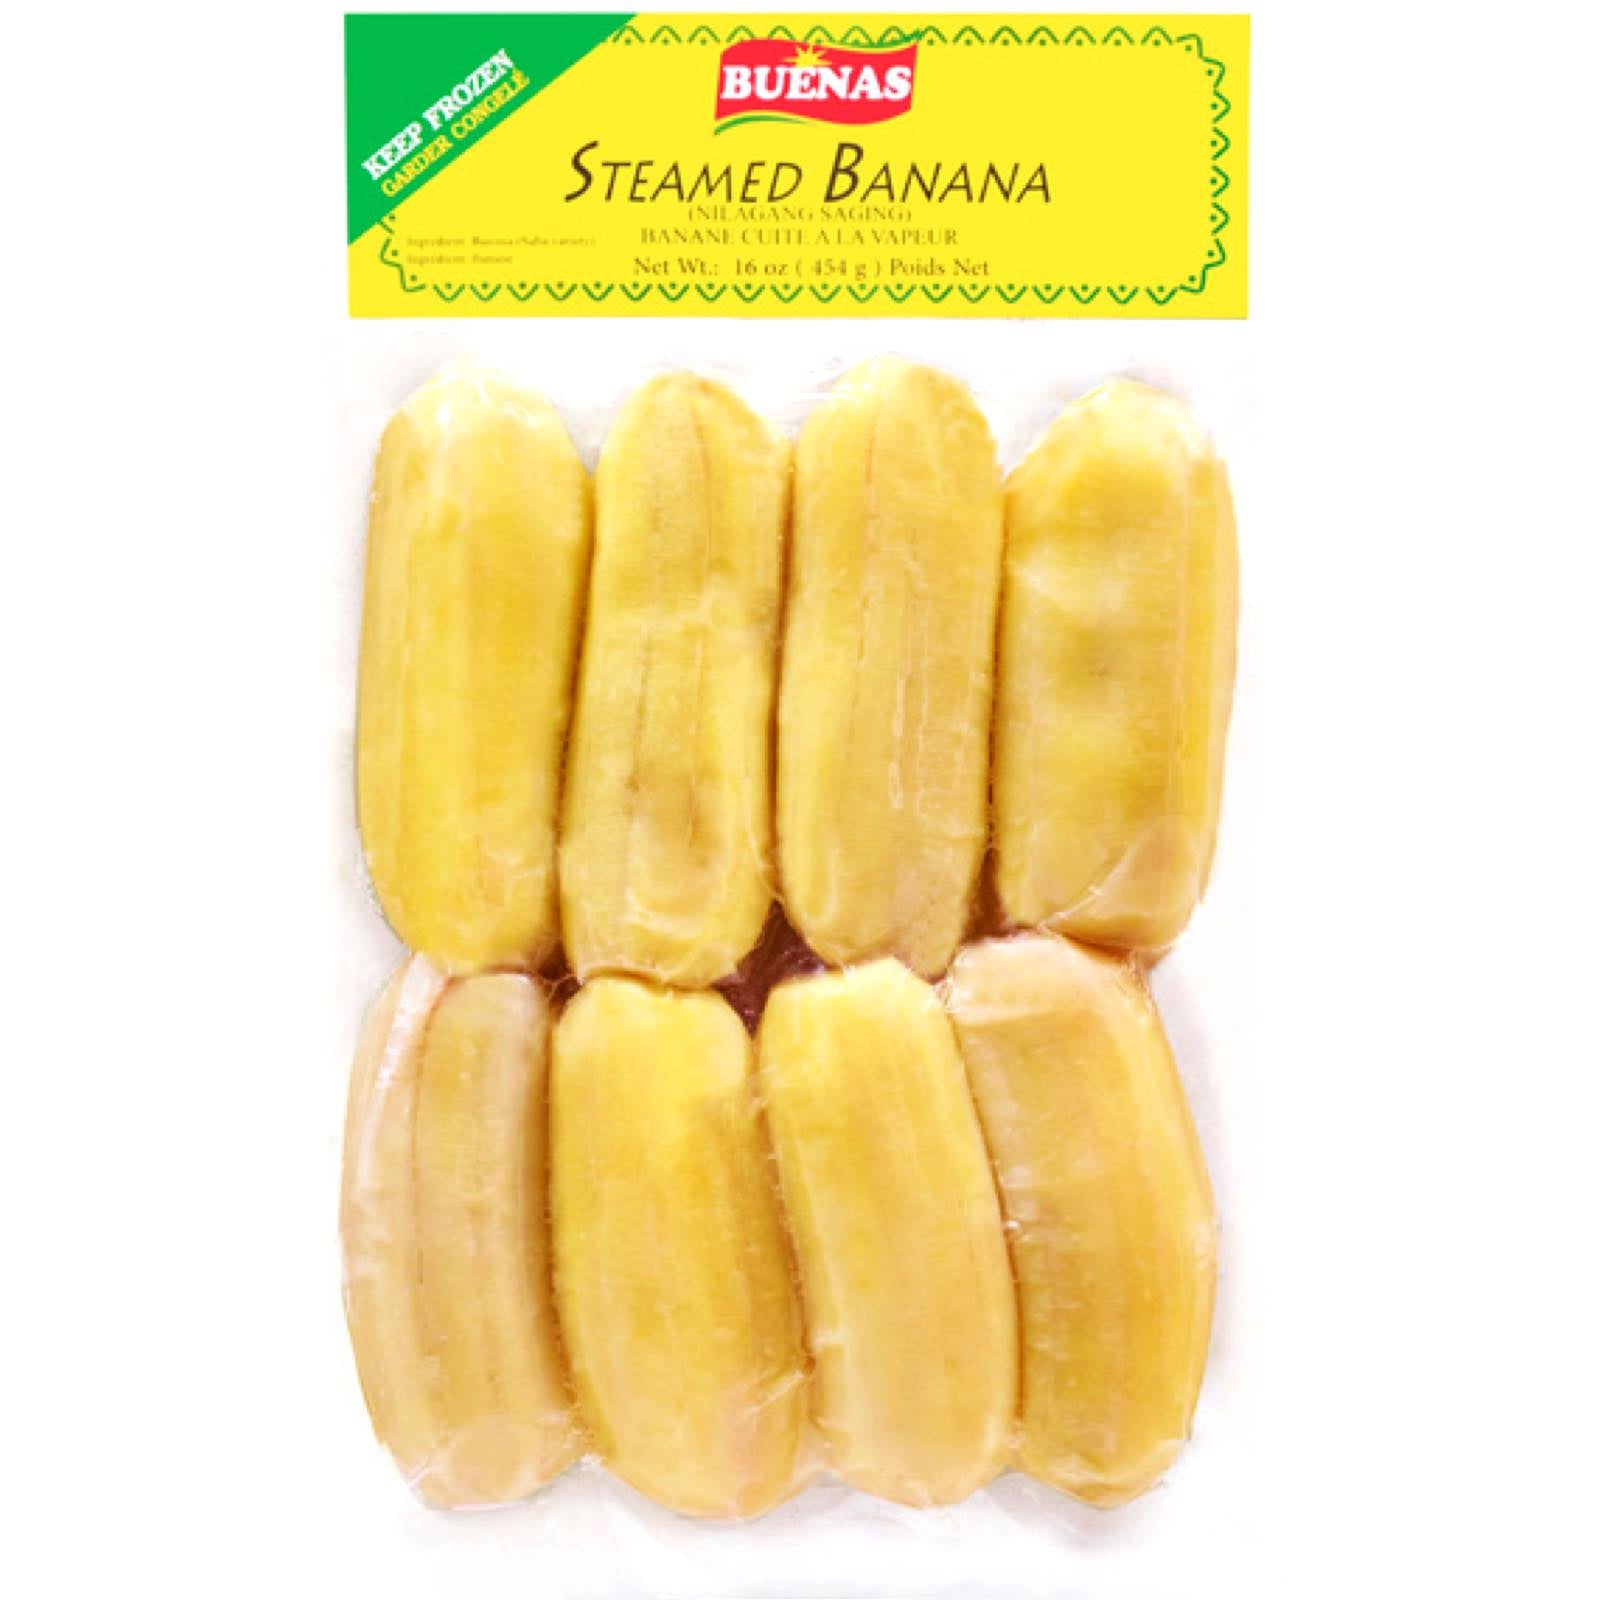 Buenas - Steamed Banana - Nilagang Saging - 16 OZ